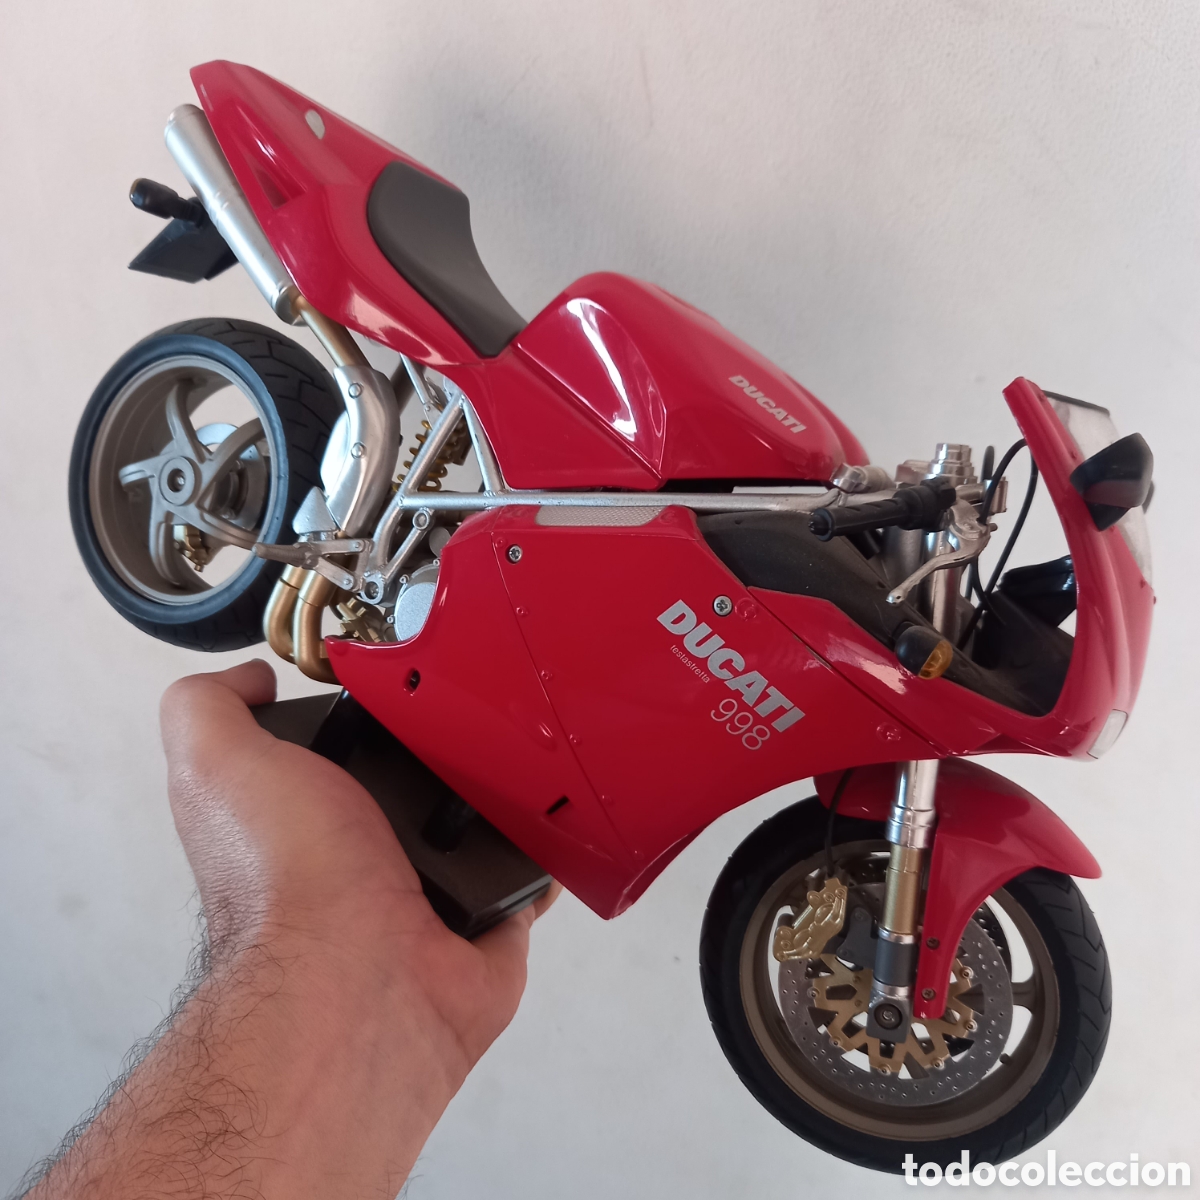 Orador papi Lo encontré moto ducati 998 escala gigante 1/6 metalica de - Comprar Motos a Escala de  colección en todocoleccion - 207725706